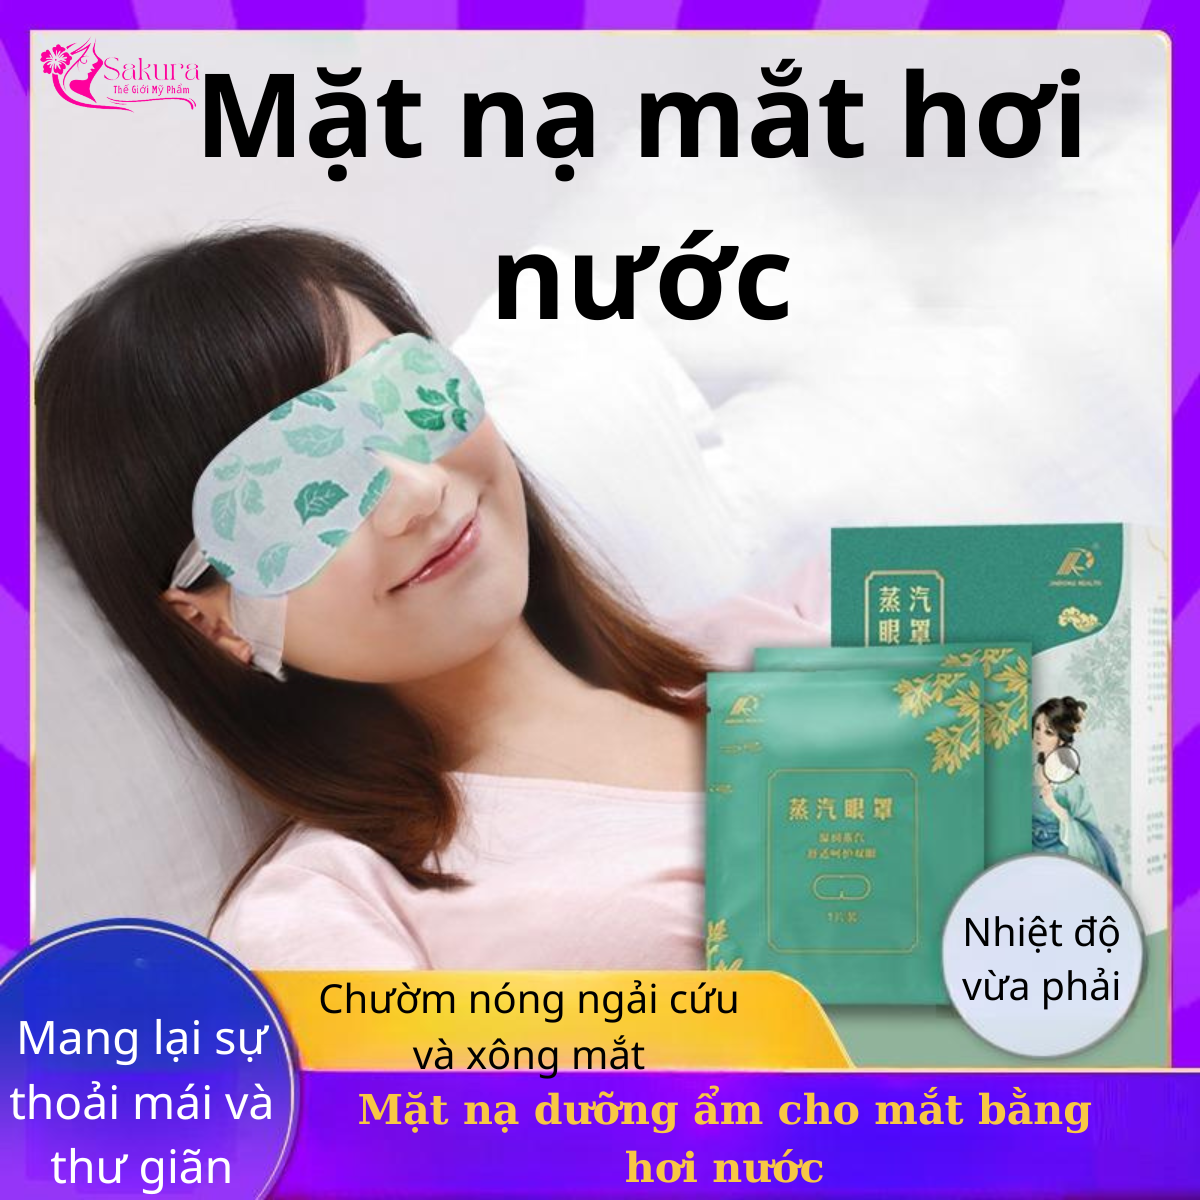 (MS20) Mặt nạ mắt hơi nước Combo 5 miếng mặt nạ chườm nóng và xông mắt ngải cứu dưỡng ẩm cho mắt bằng hơi nước